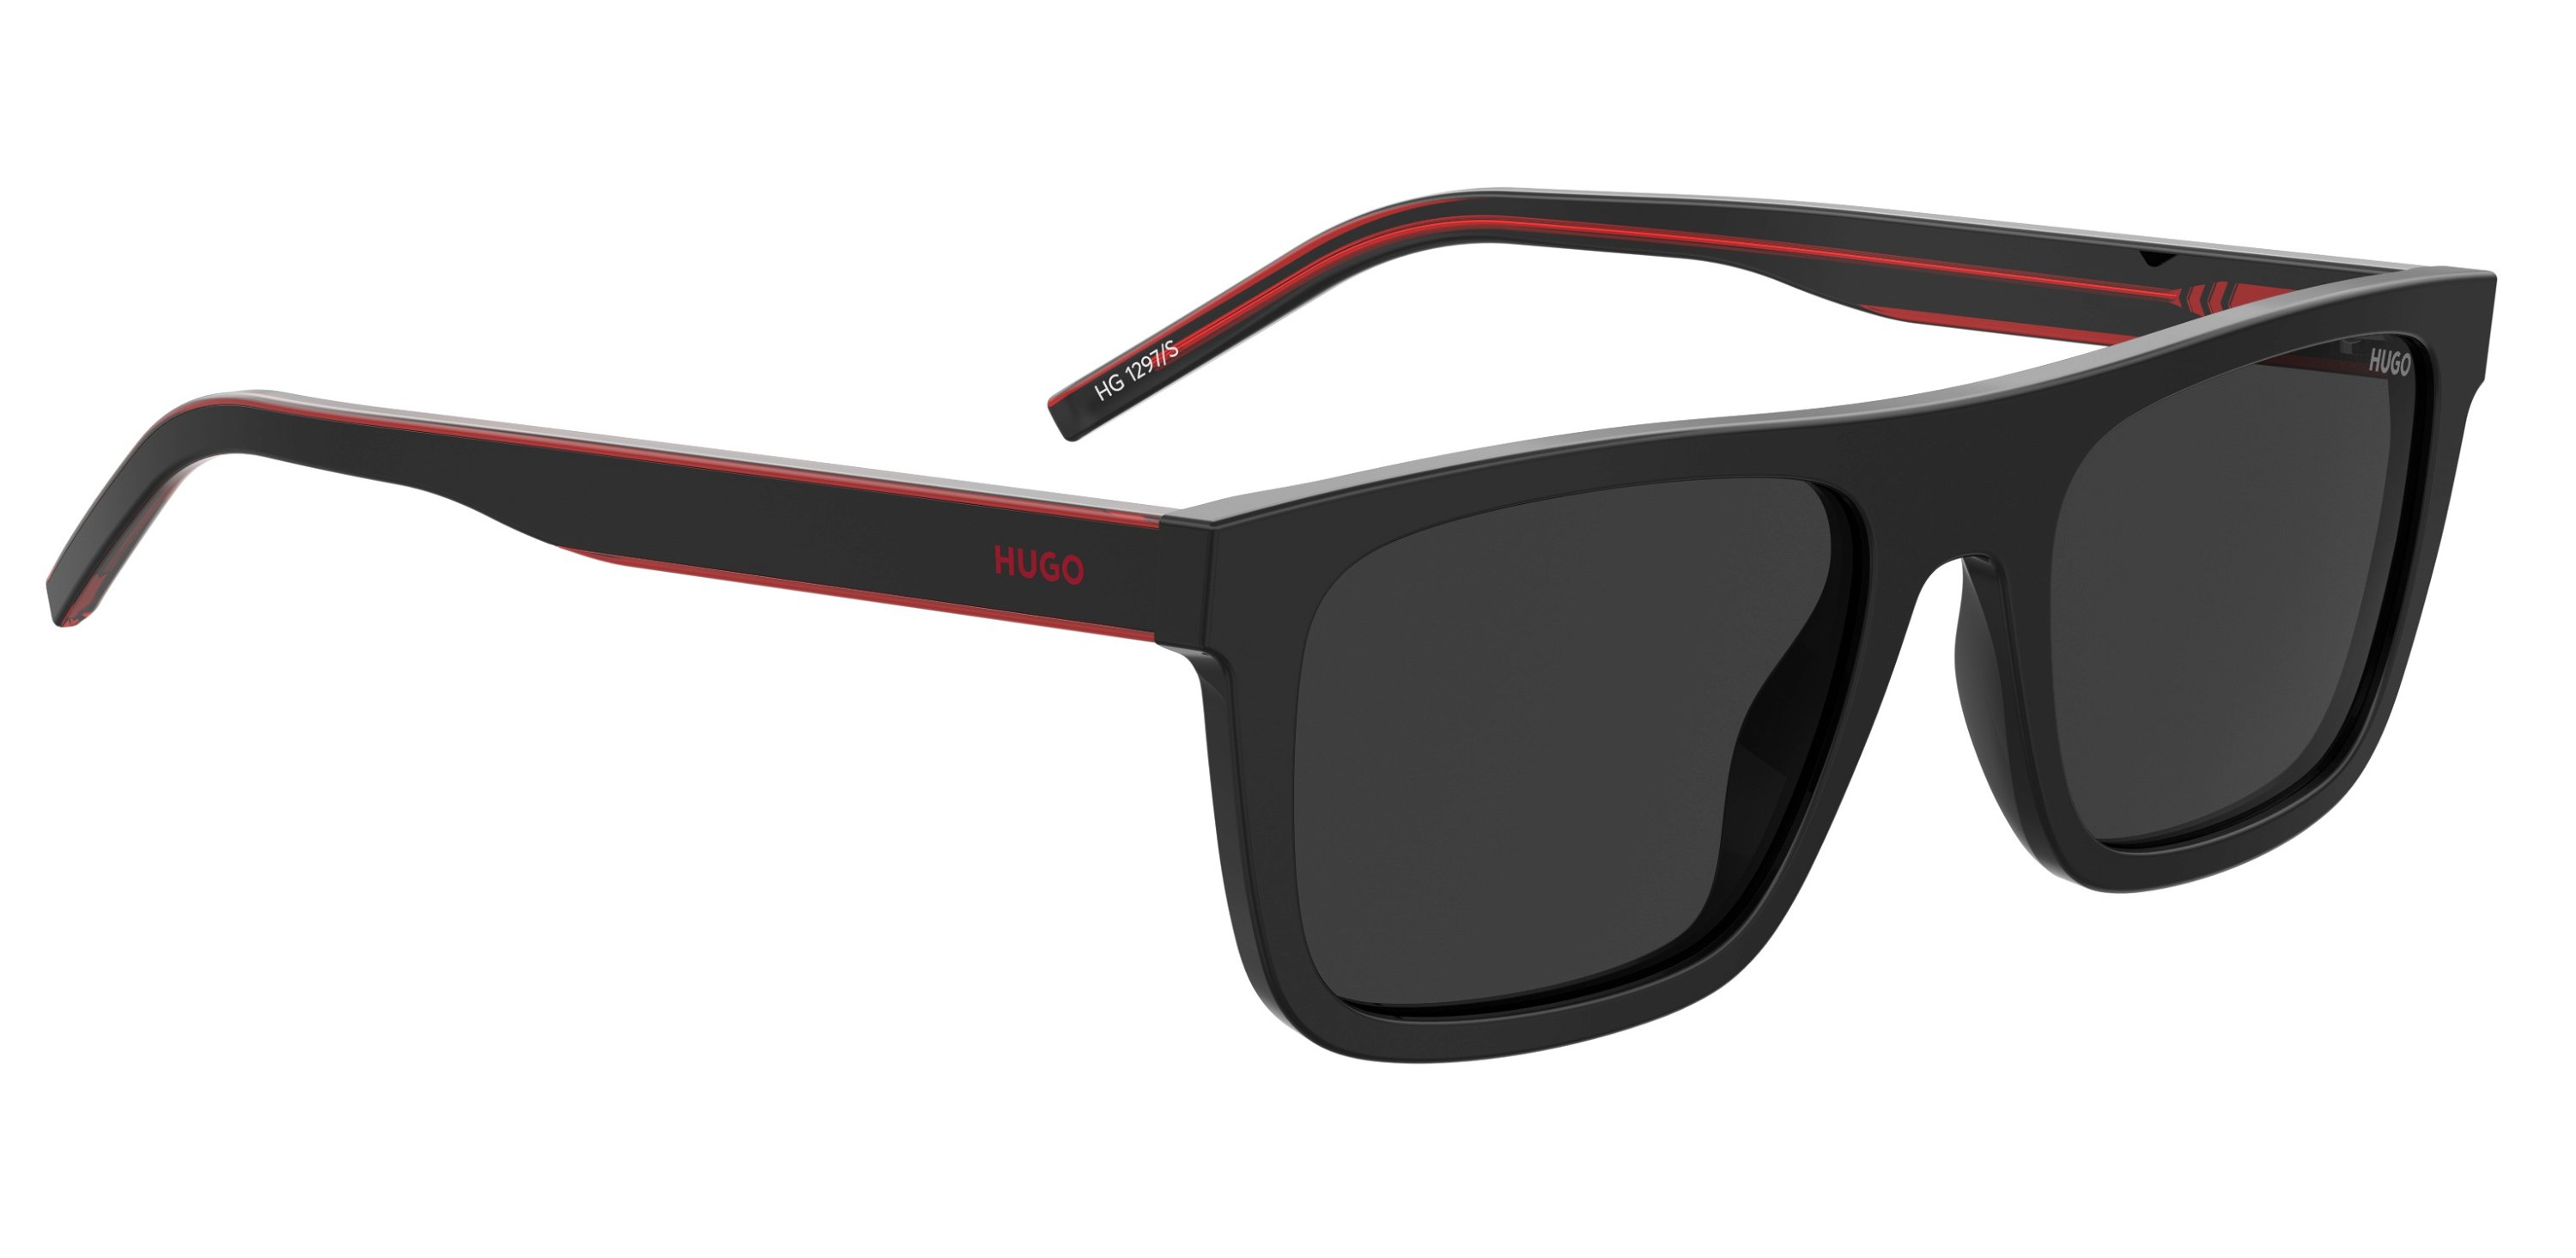 Das Bild zeigt die Sonnenbrille HG1297/S OIT von der Marke Hugo in rot/schwarz.